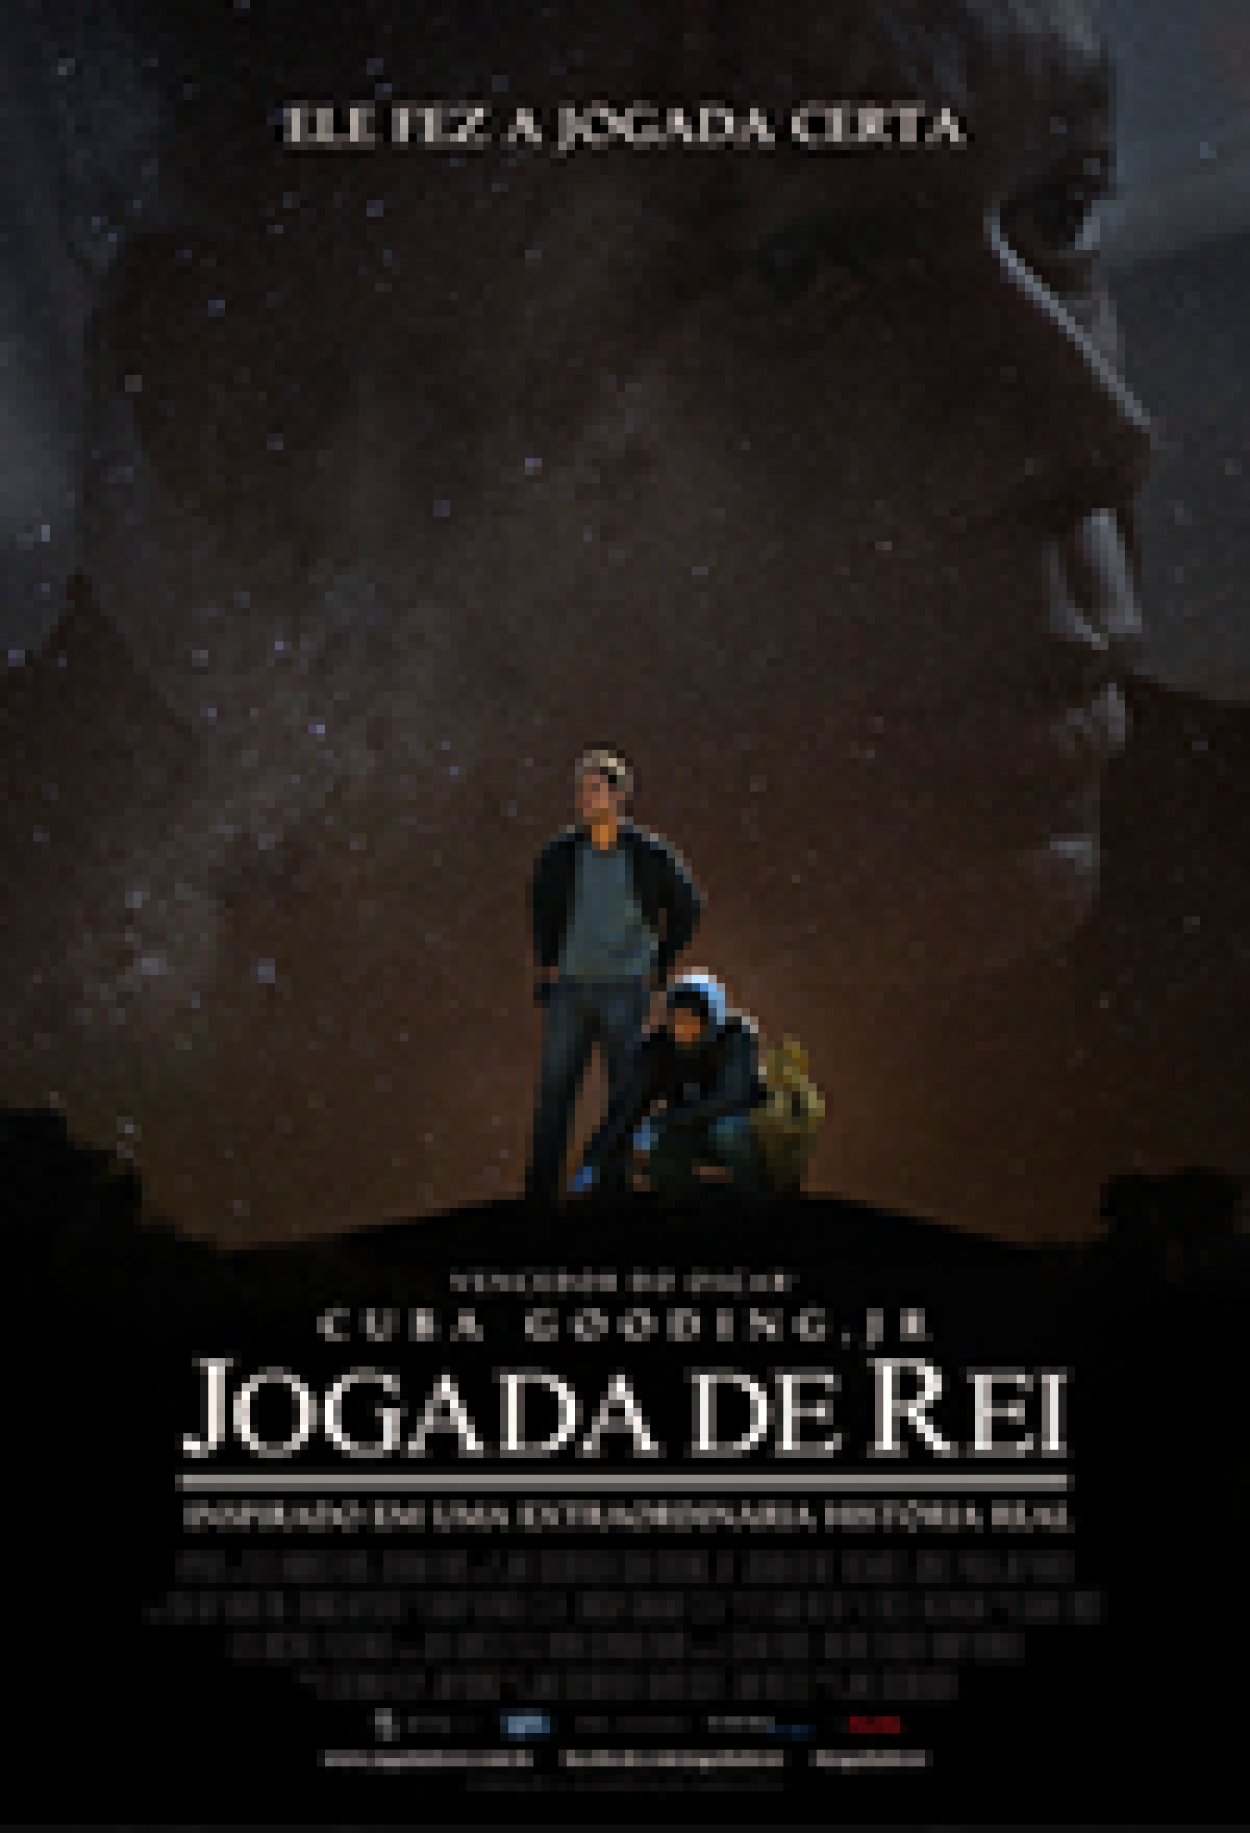 O Dono do Jogo (Filme), Trailer, Sinopse e Curiosidades - Cinema10